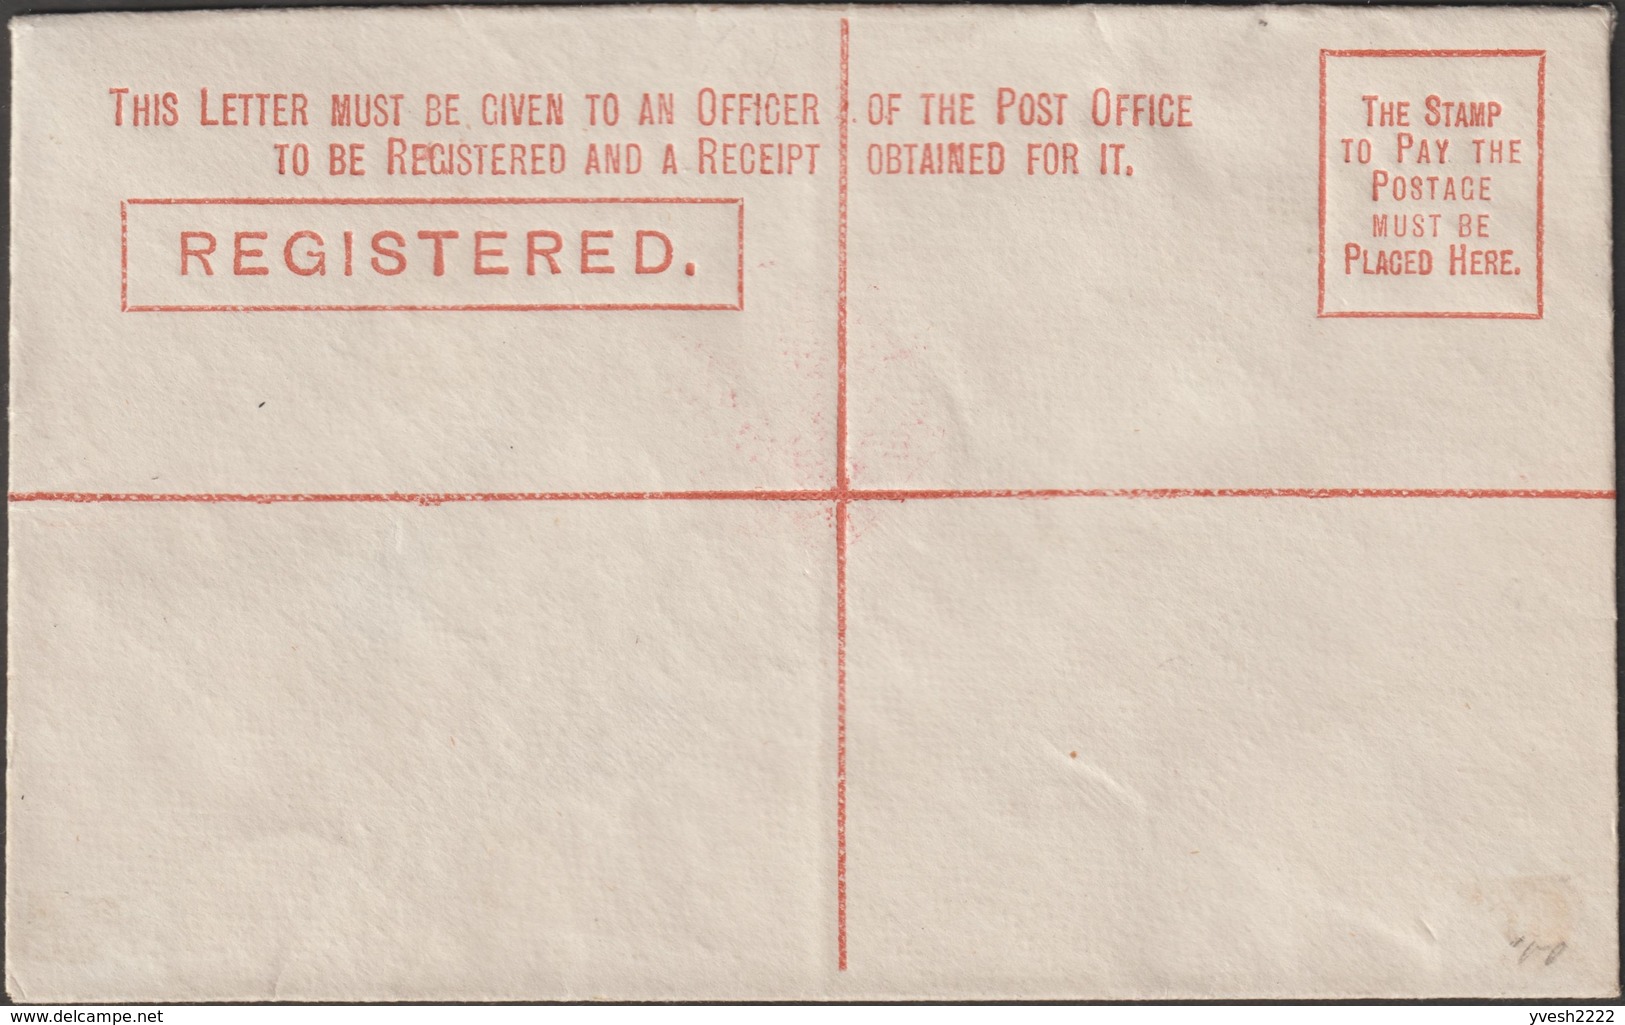 Nouvelles Galles du Sud 1889. 3 entiers postaux, enveloppes recommandé. Victoria 3 et 4 p, impression locale